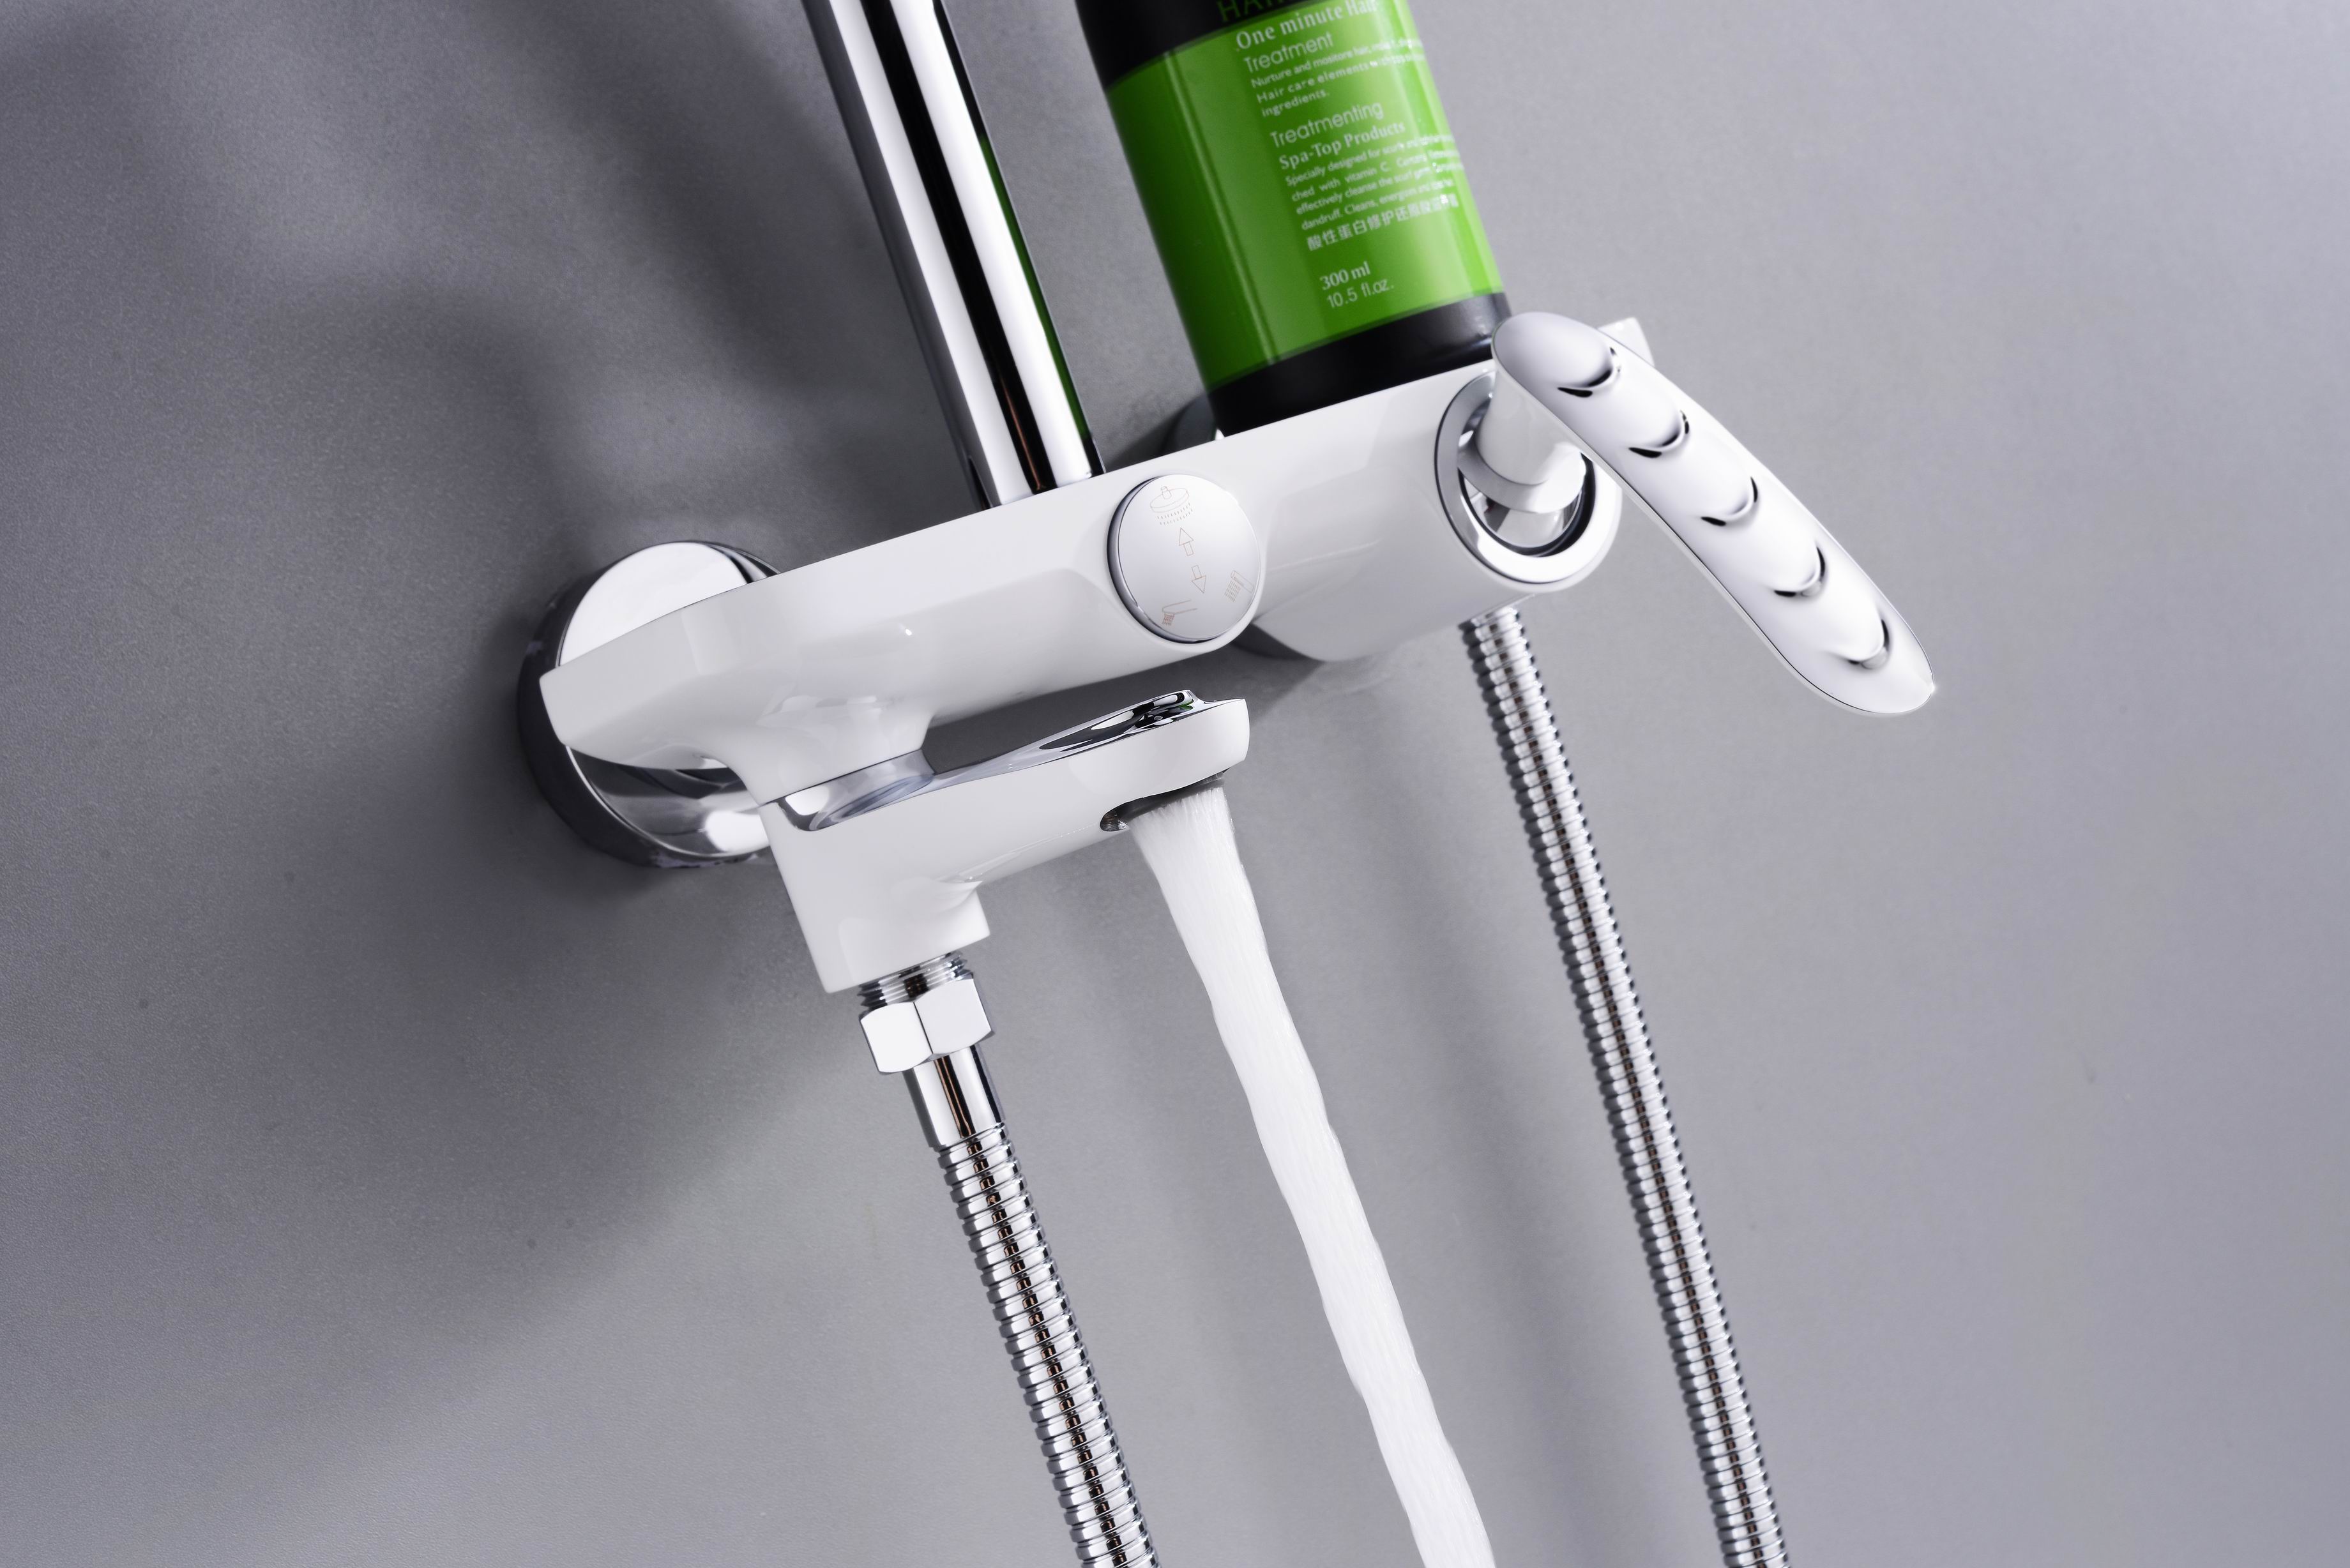 Modern Design Styles Bathroom Faucet Concealed Shower Set